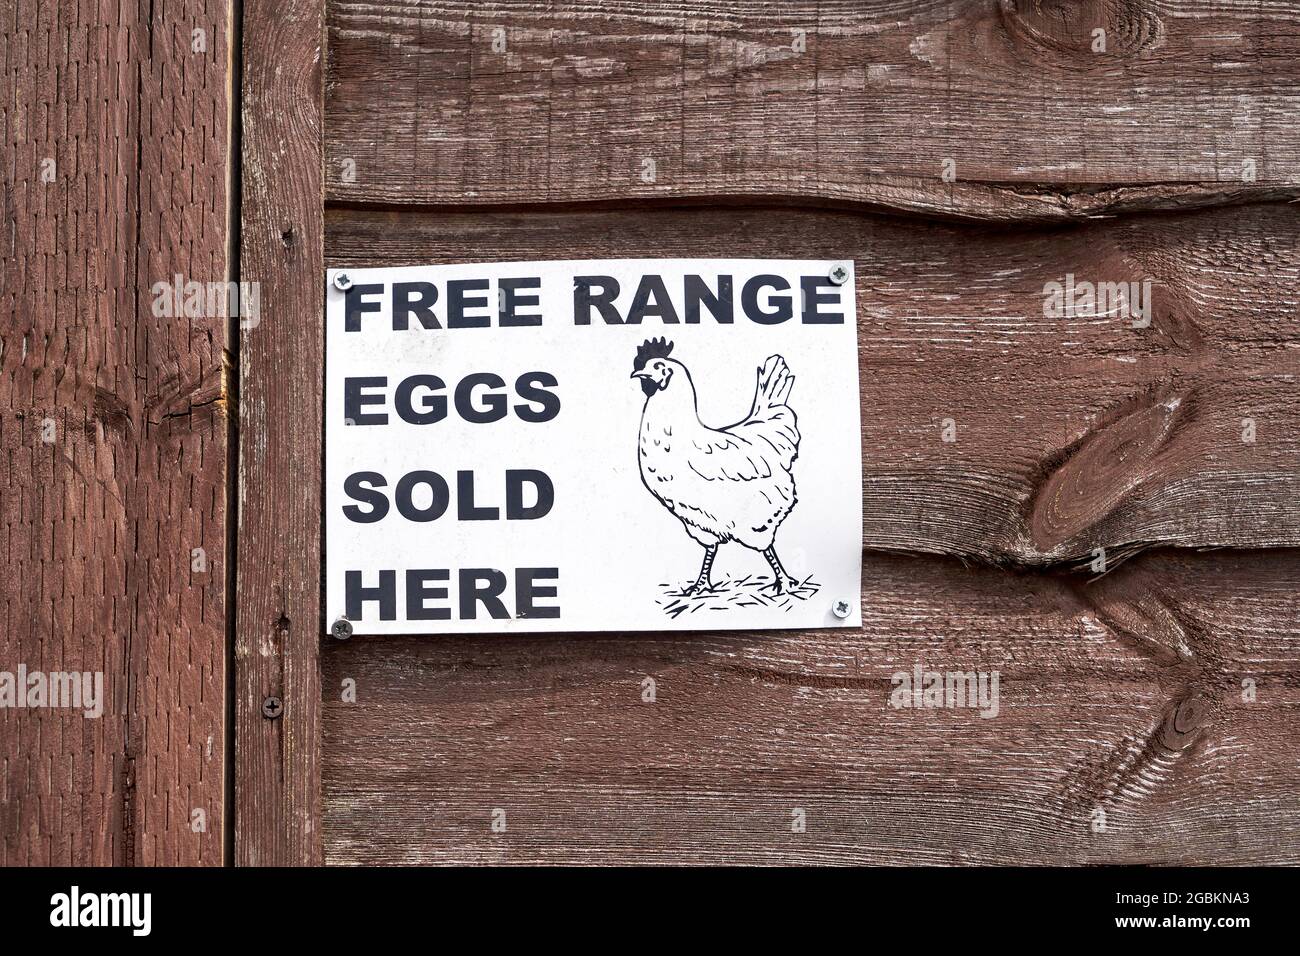 Freilandeier, die hier verkauft werden, sind ein Schild mit einer Abbildung eines Hühnchens Stockfoto